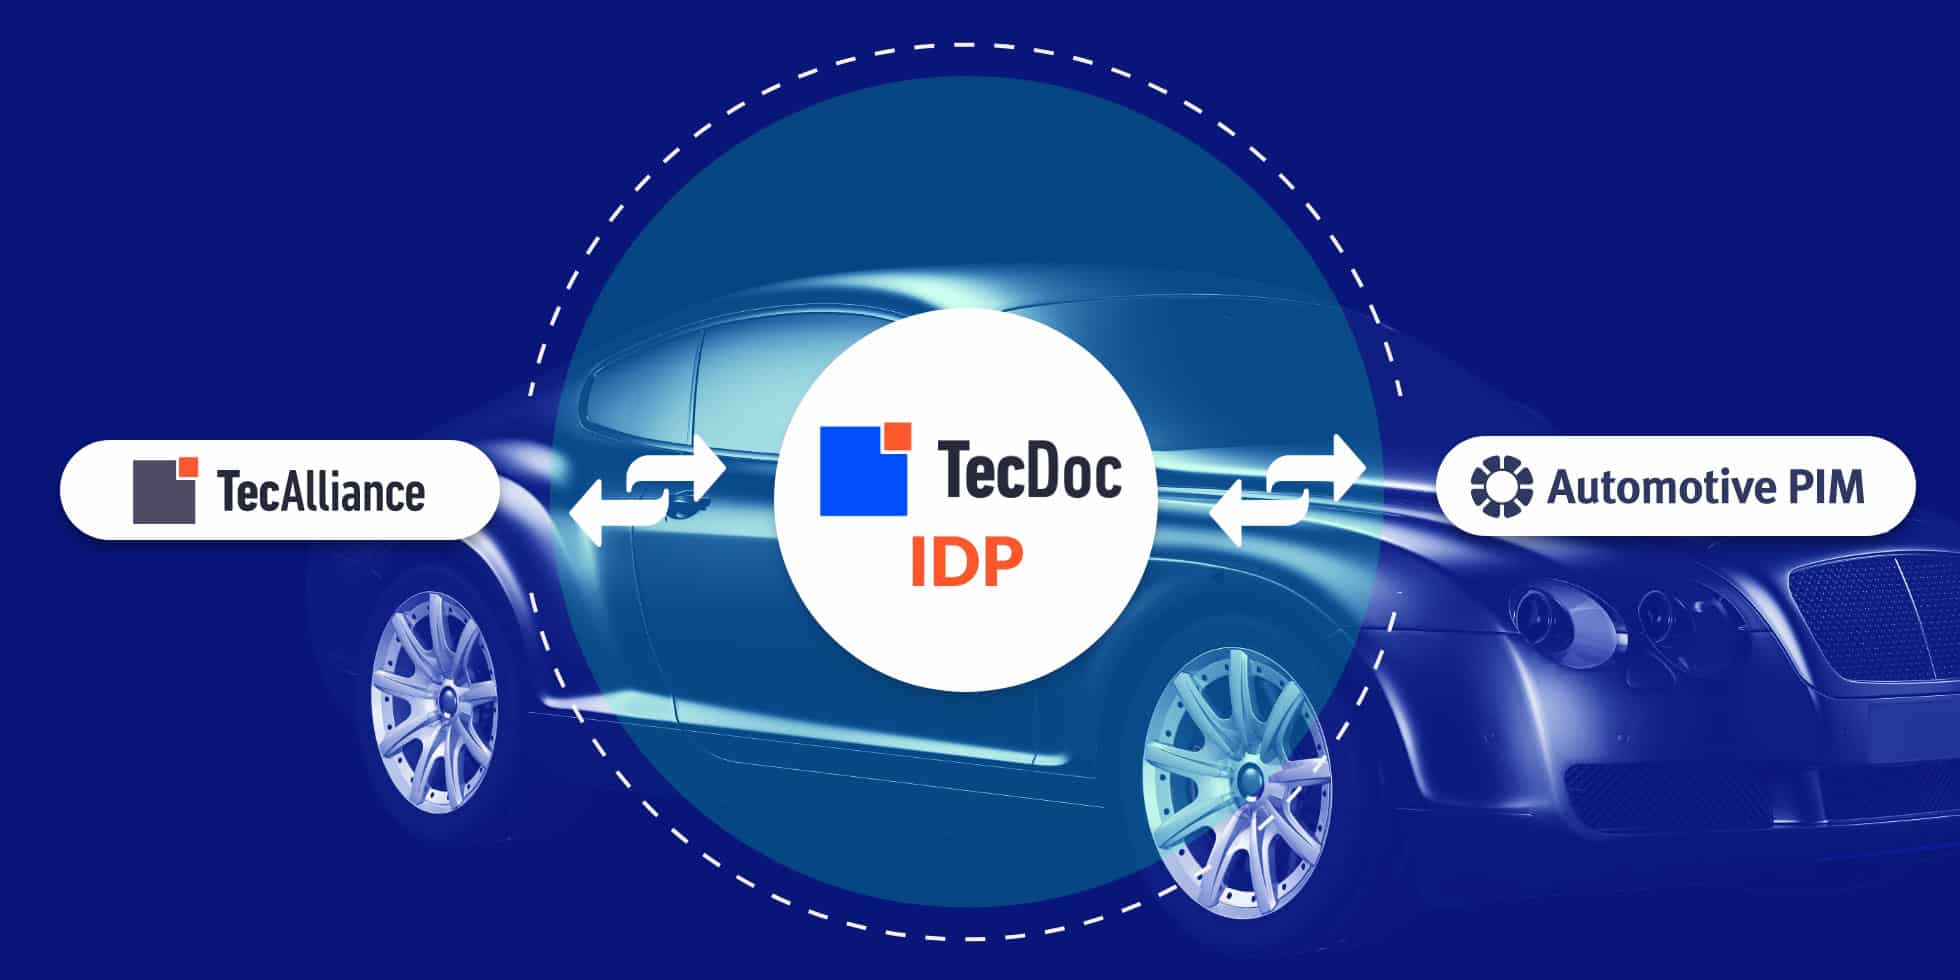 AutomotivePIM TecDoc IDP interface